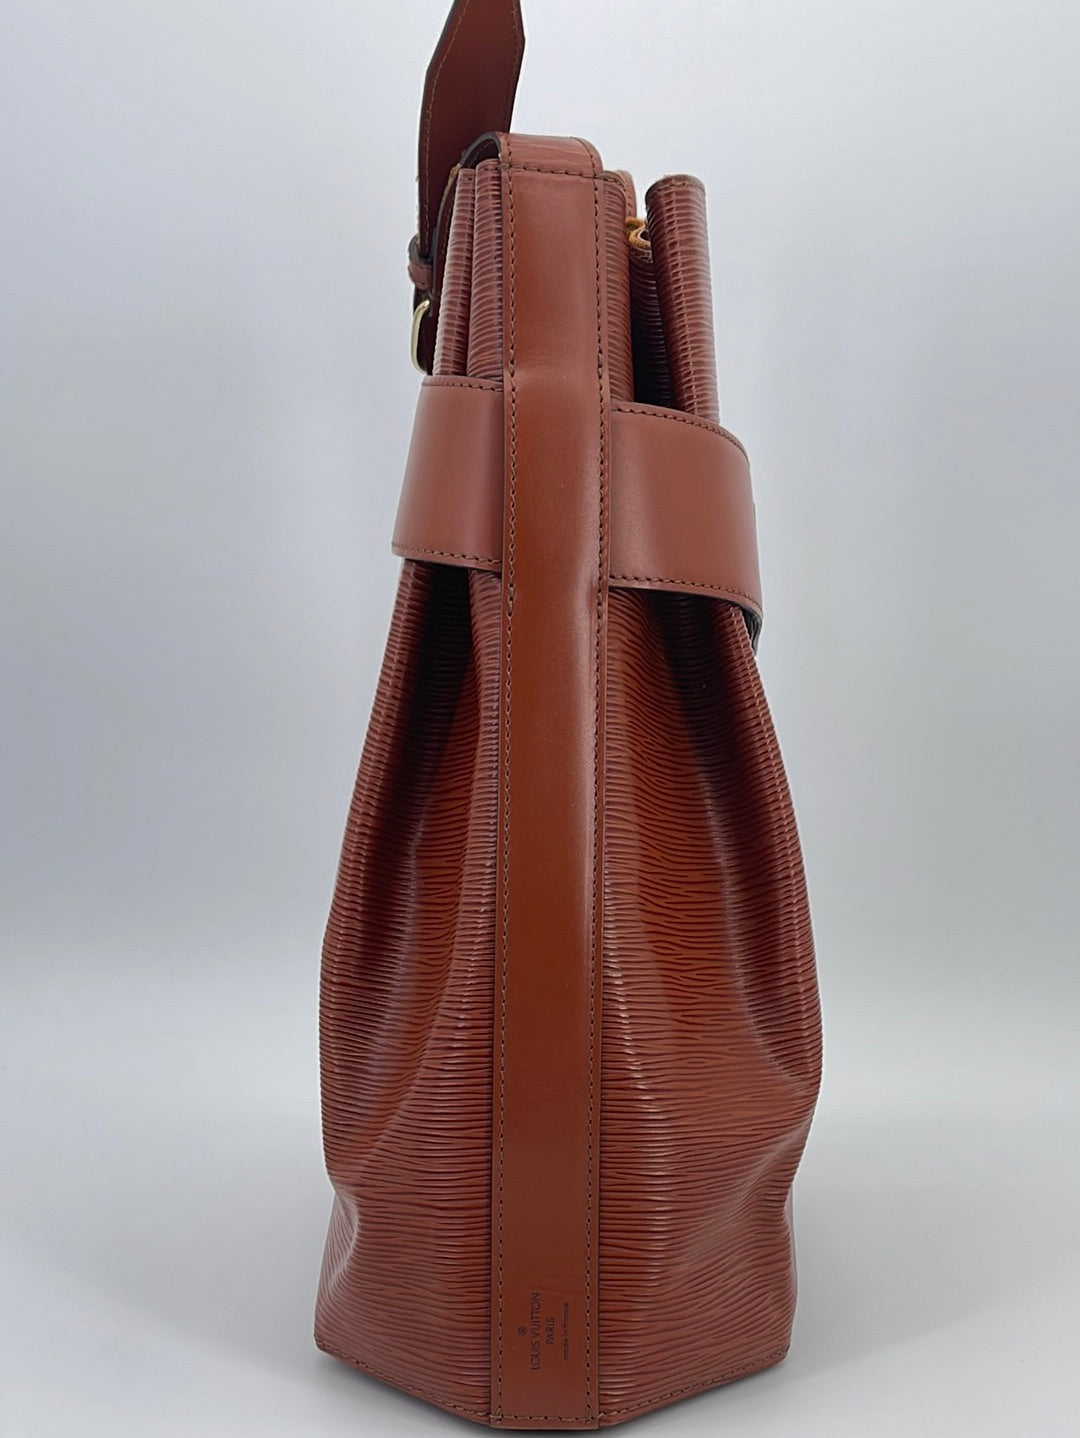 Louis Vuitton Sac D'Epaule PM - ShopStyle Shoulder Bags